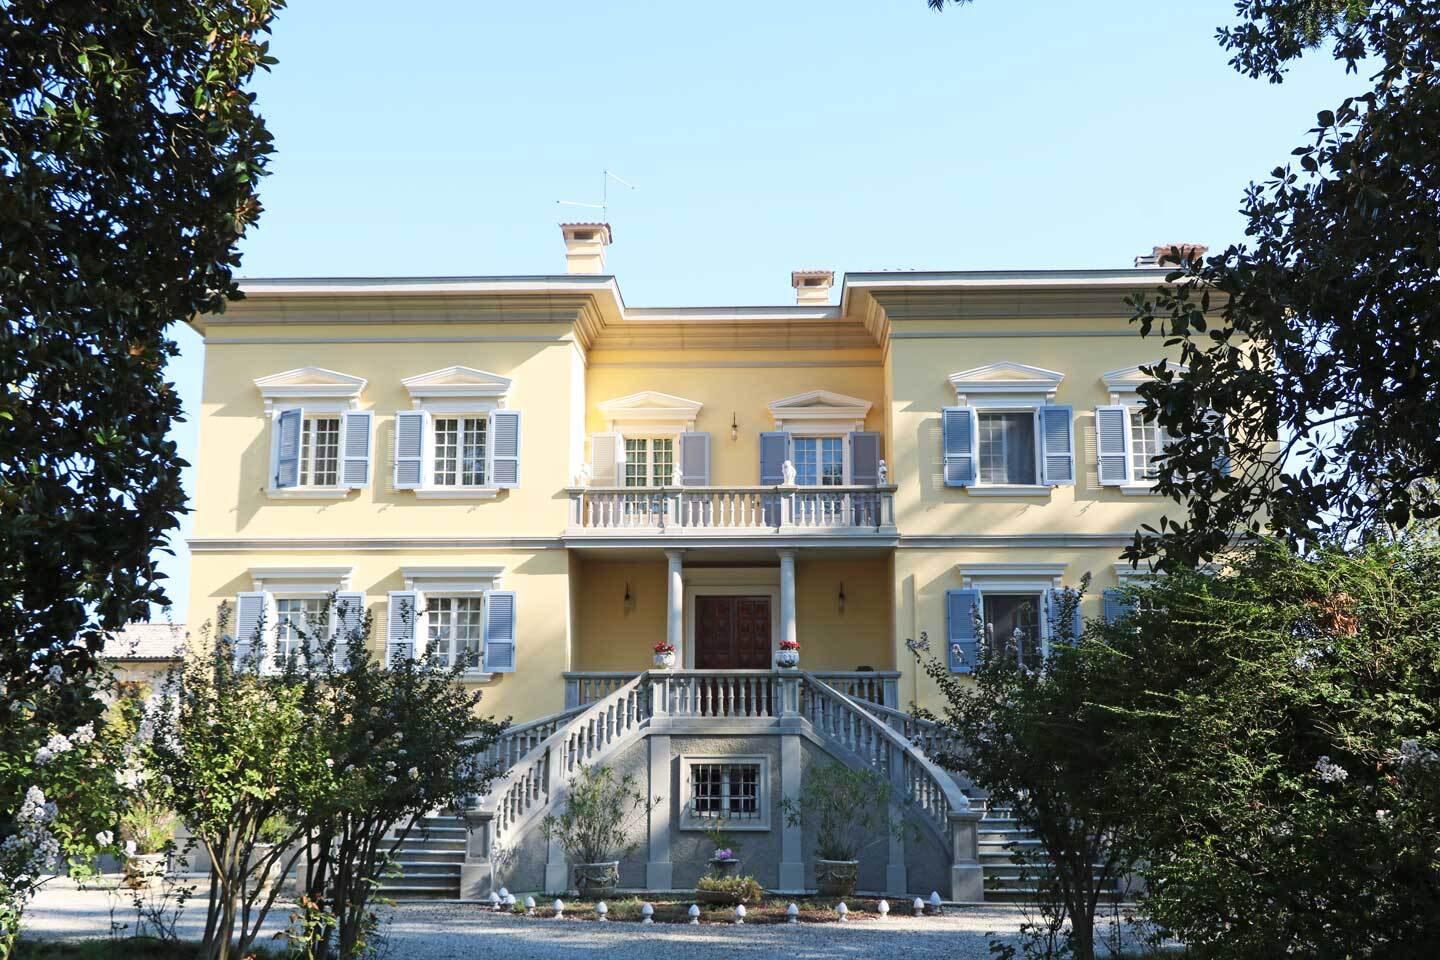 A vendre villa in zone tranquille Sorbolo Emilia-Romagna